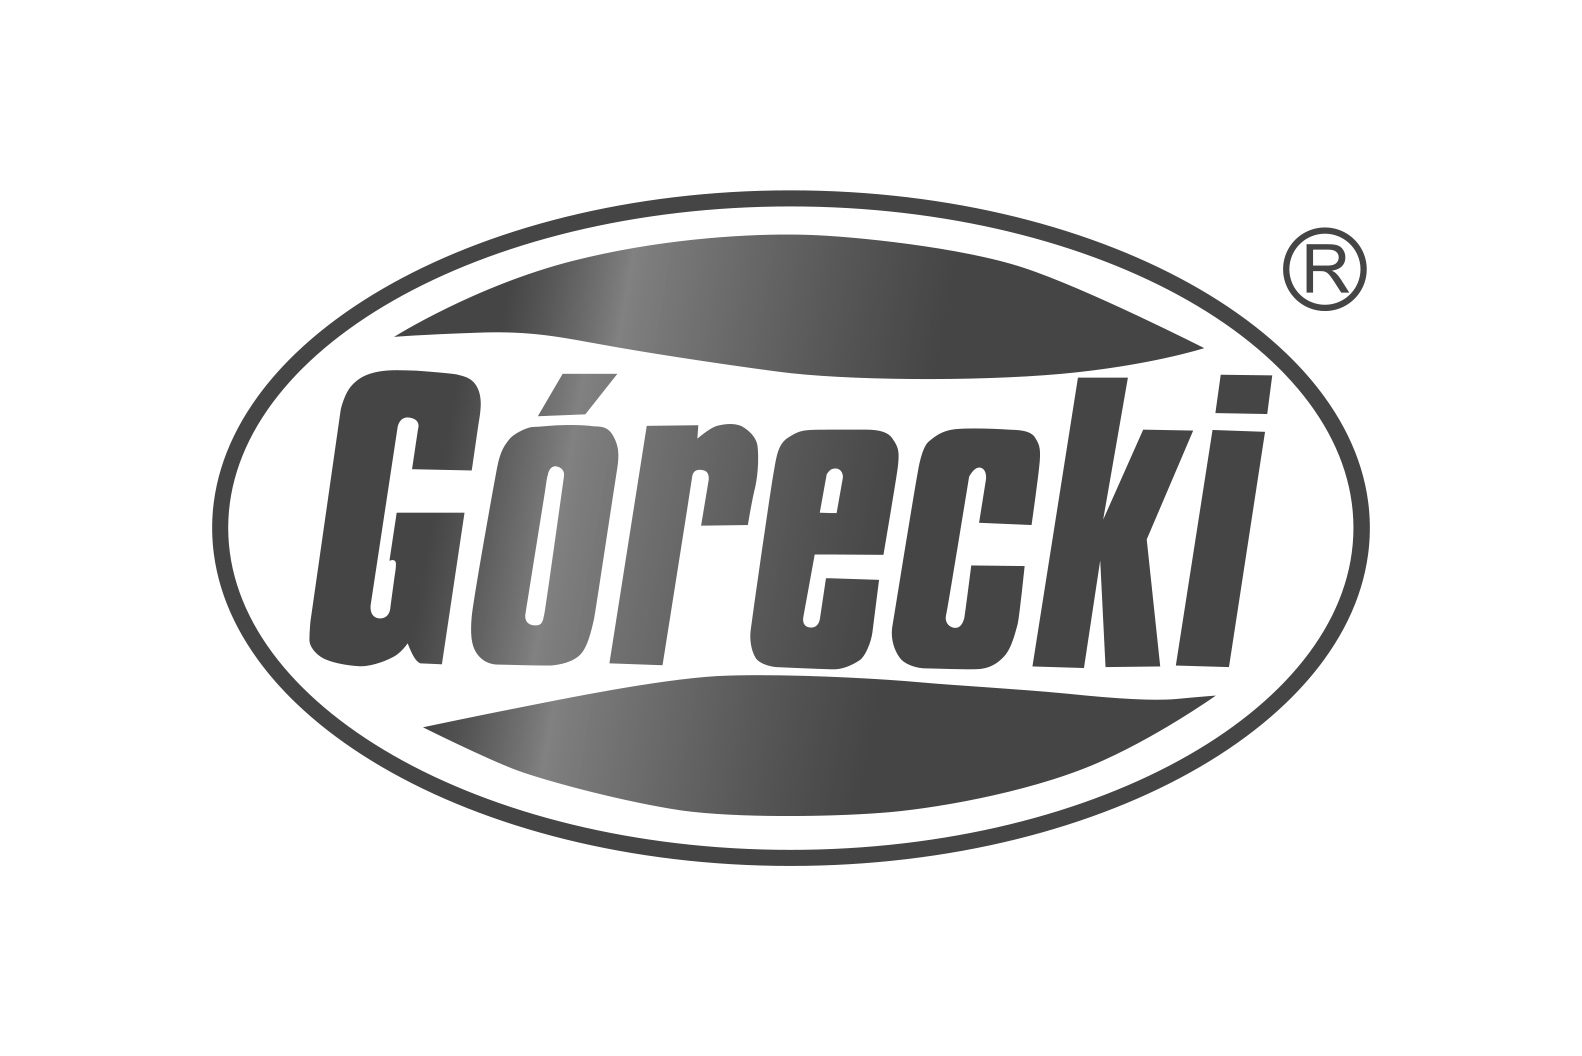 GORECKI-1 4x6